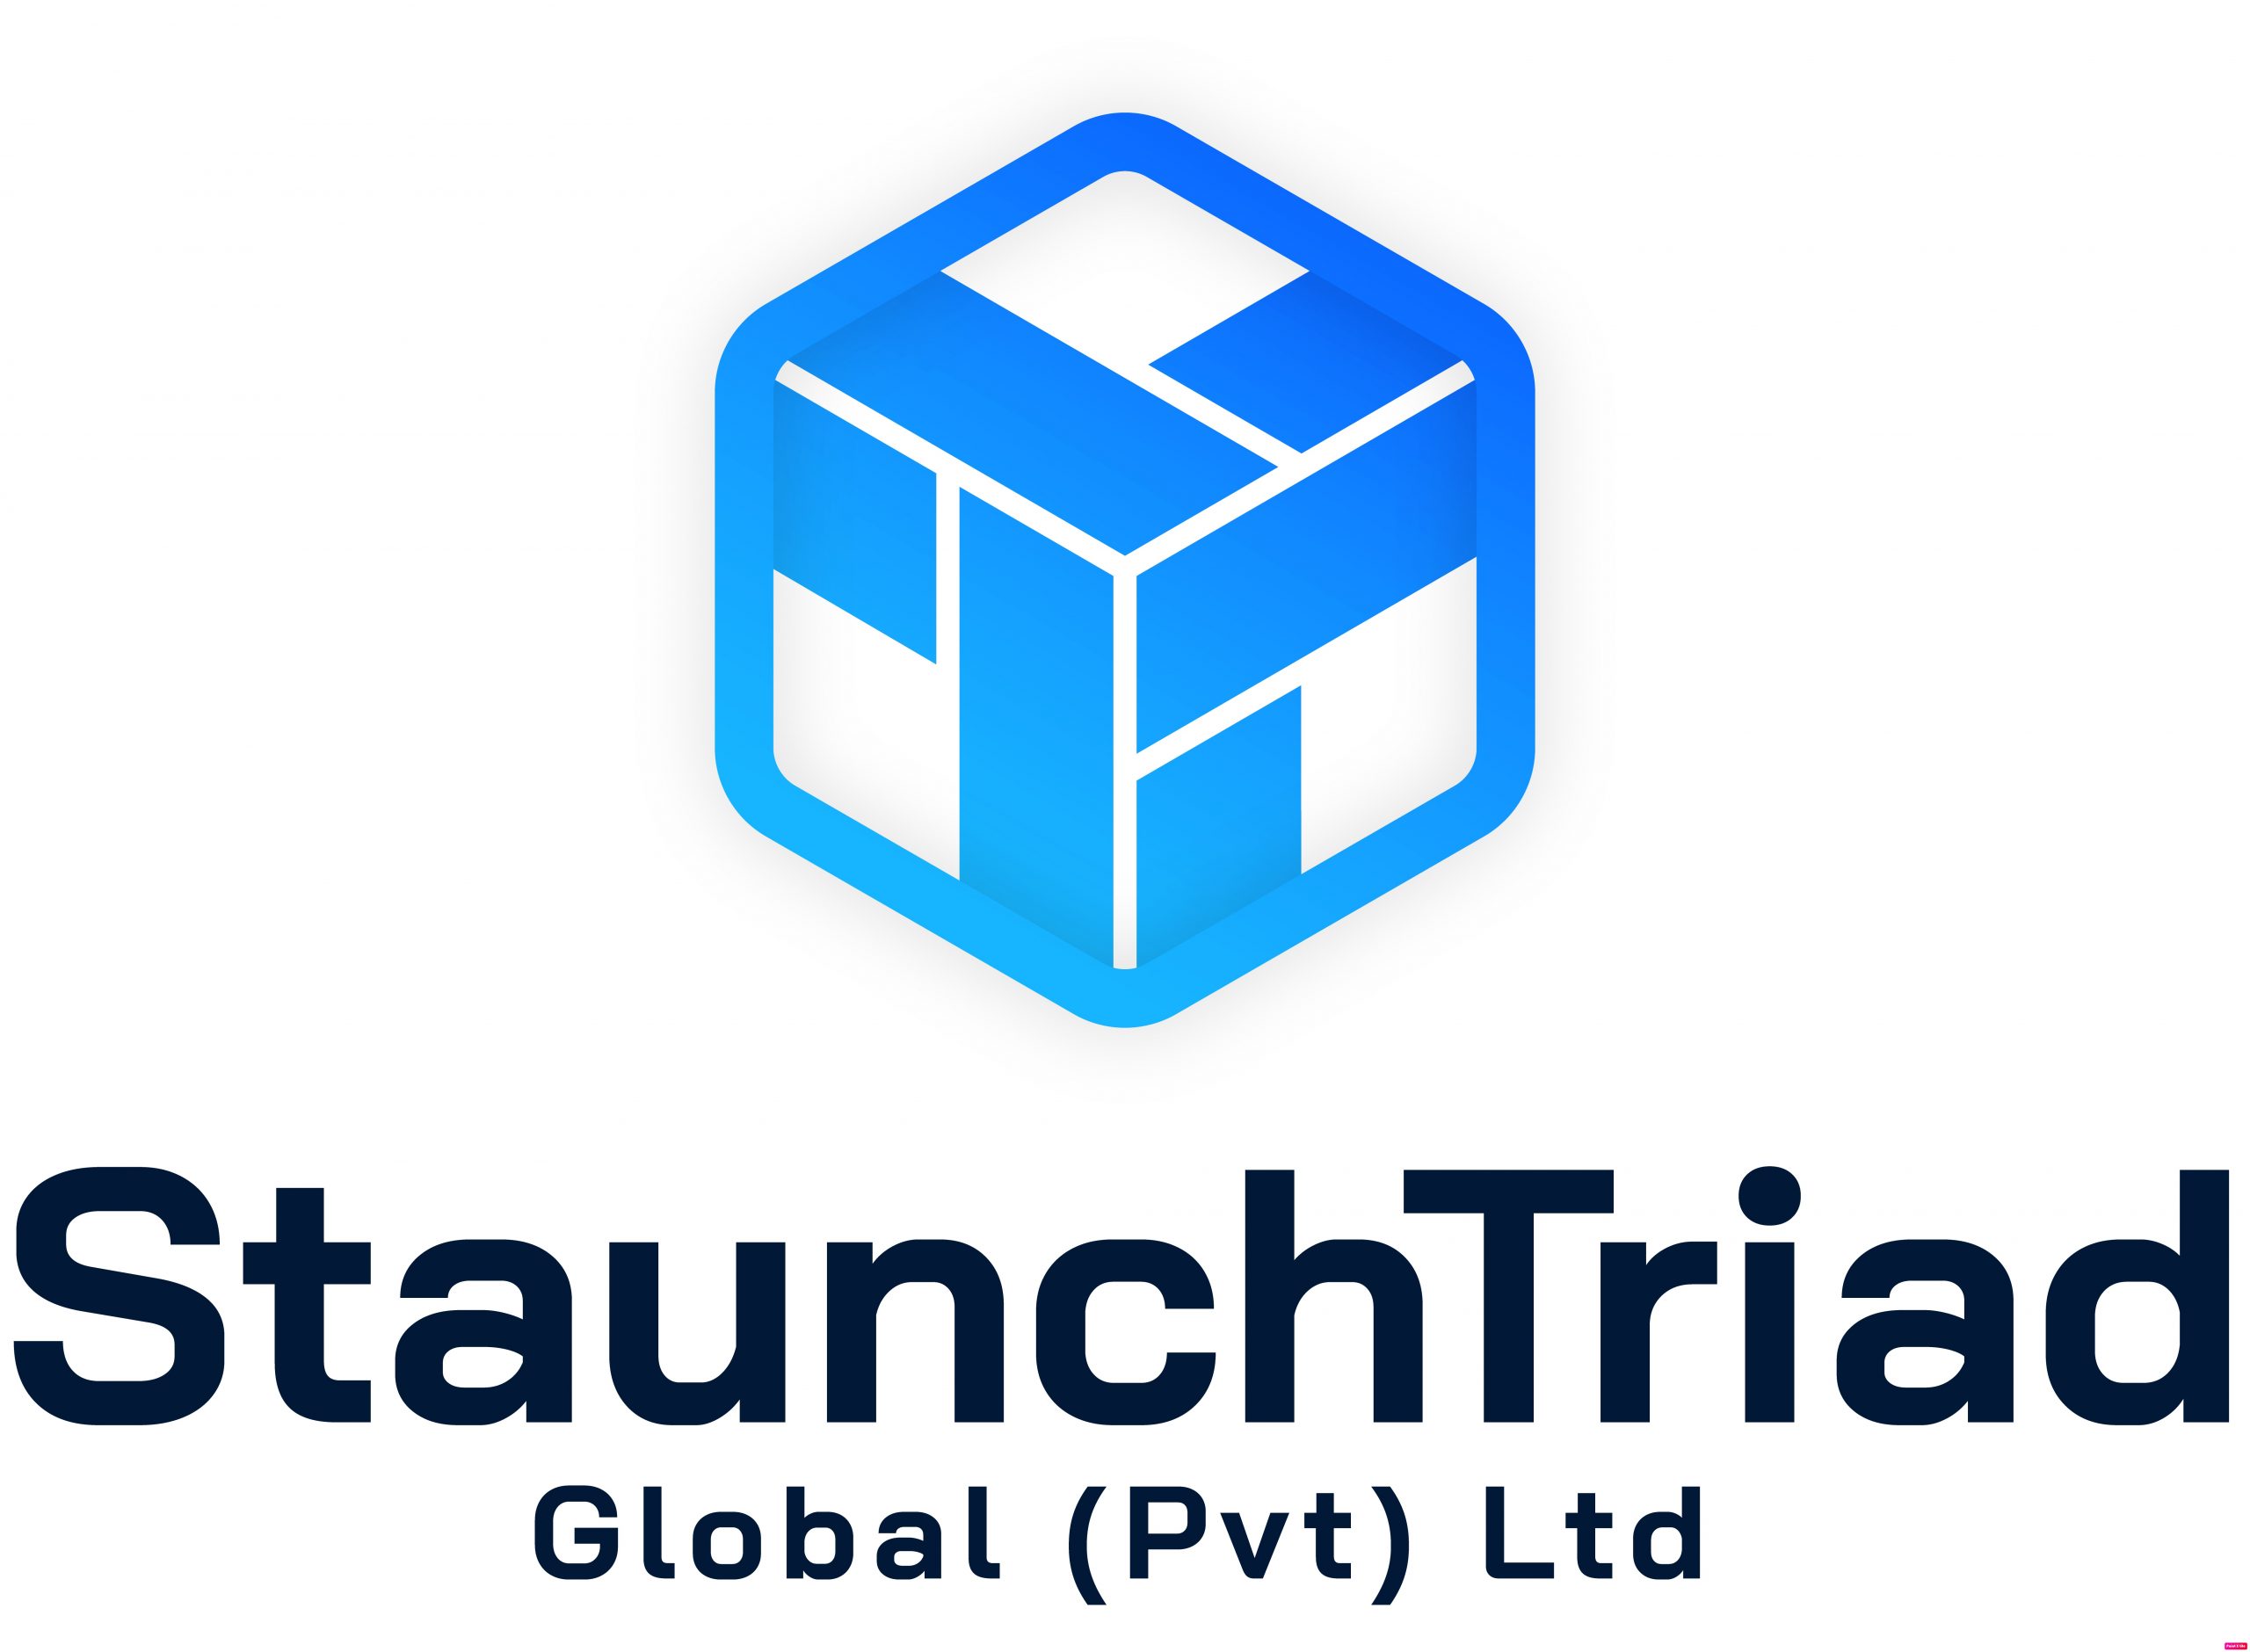 Staunch Triad Global (Pvt) Ltd